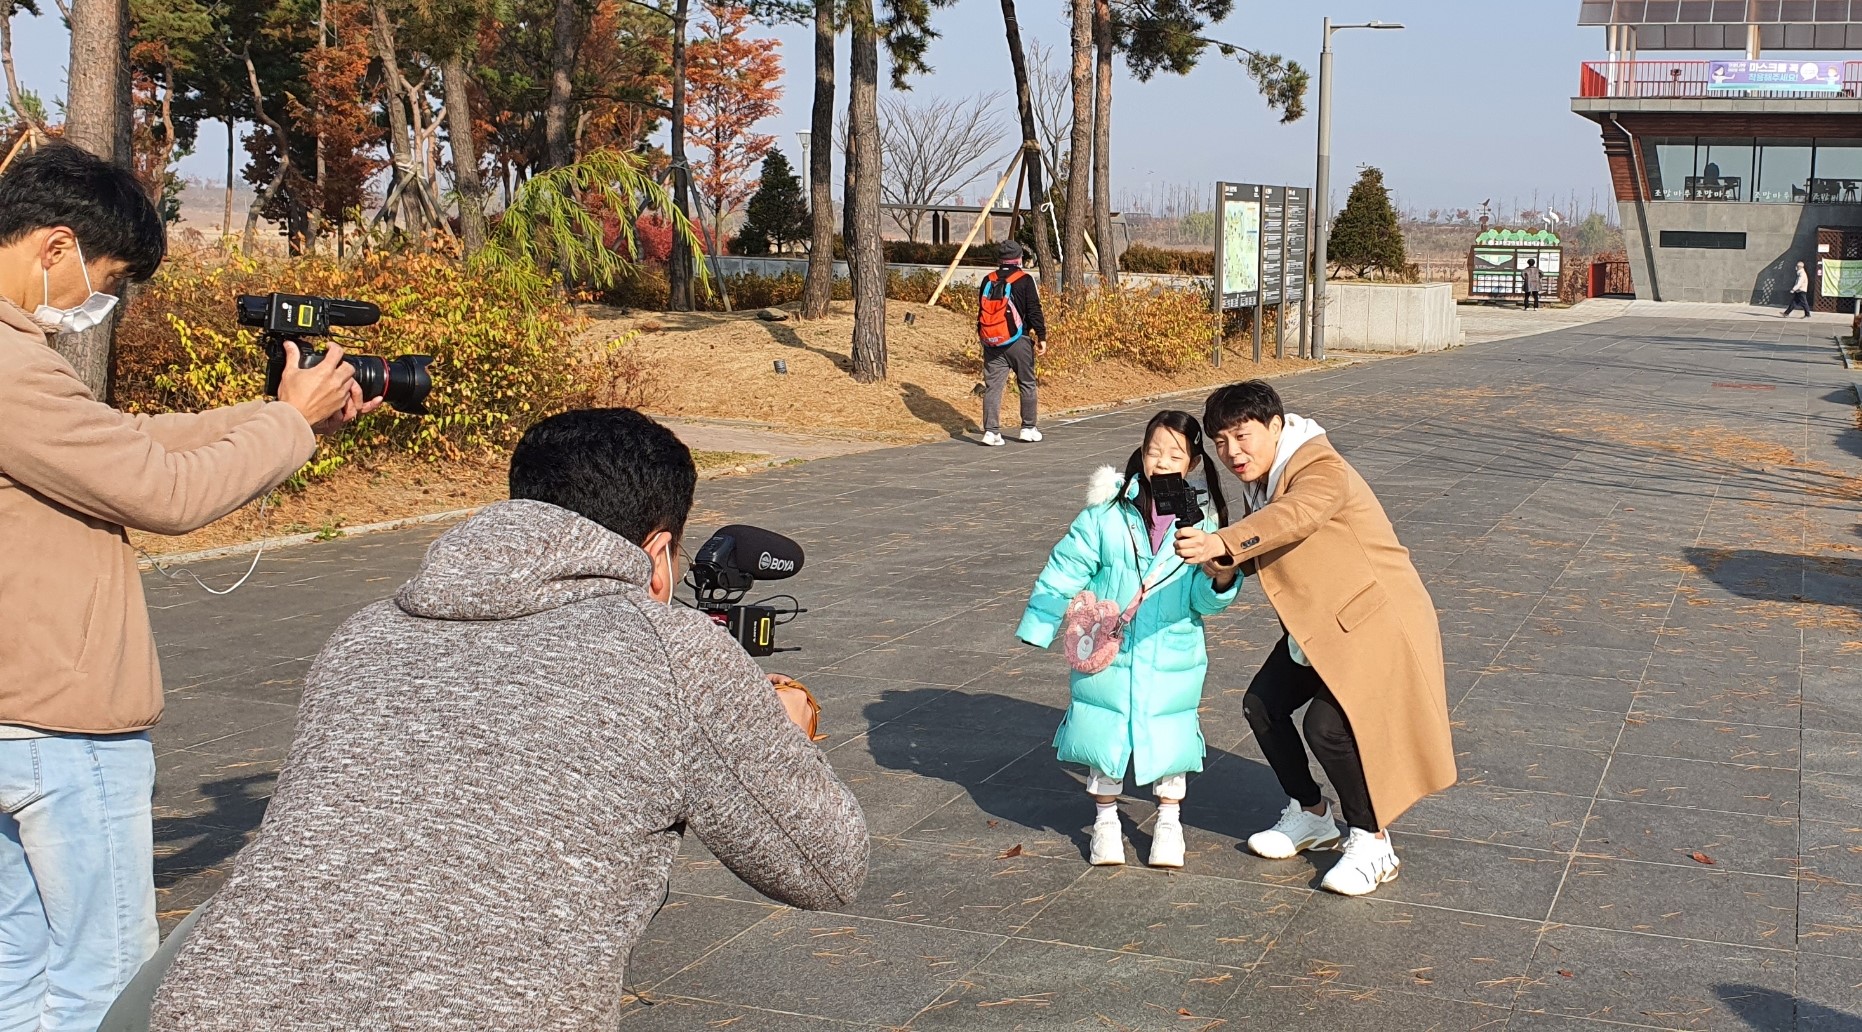 유튜브 리원세상(구독자316만명) 아빠 리파와 딸 리원이 김포한강야생조류생태공원에서 한강물길트레킹에 참여하고 있다.